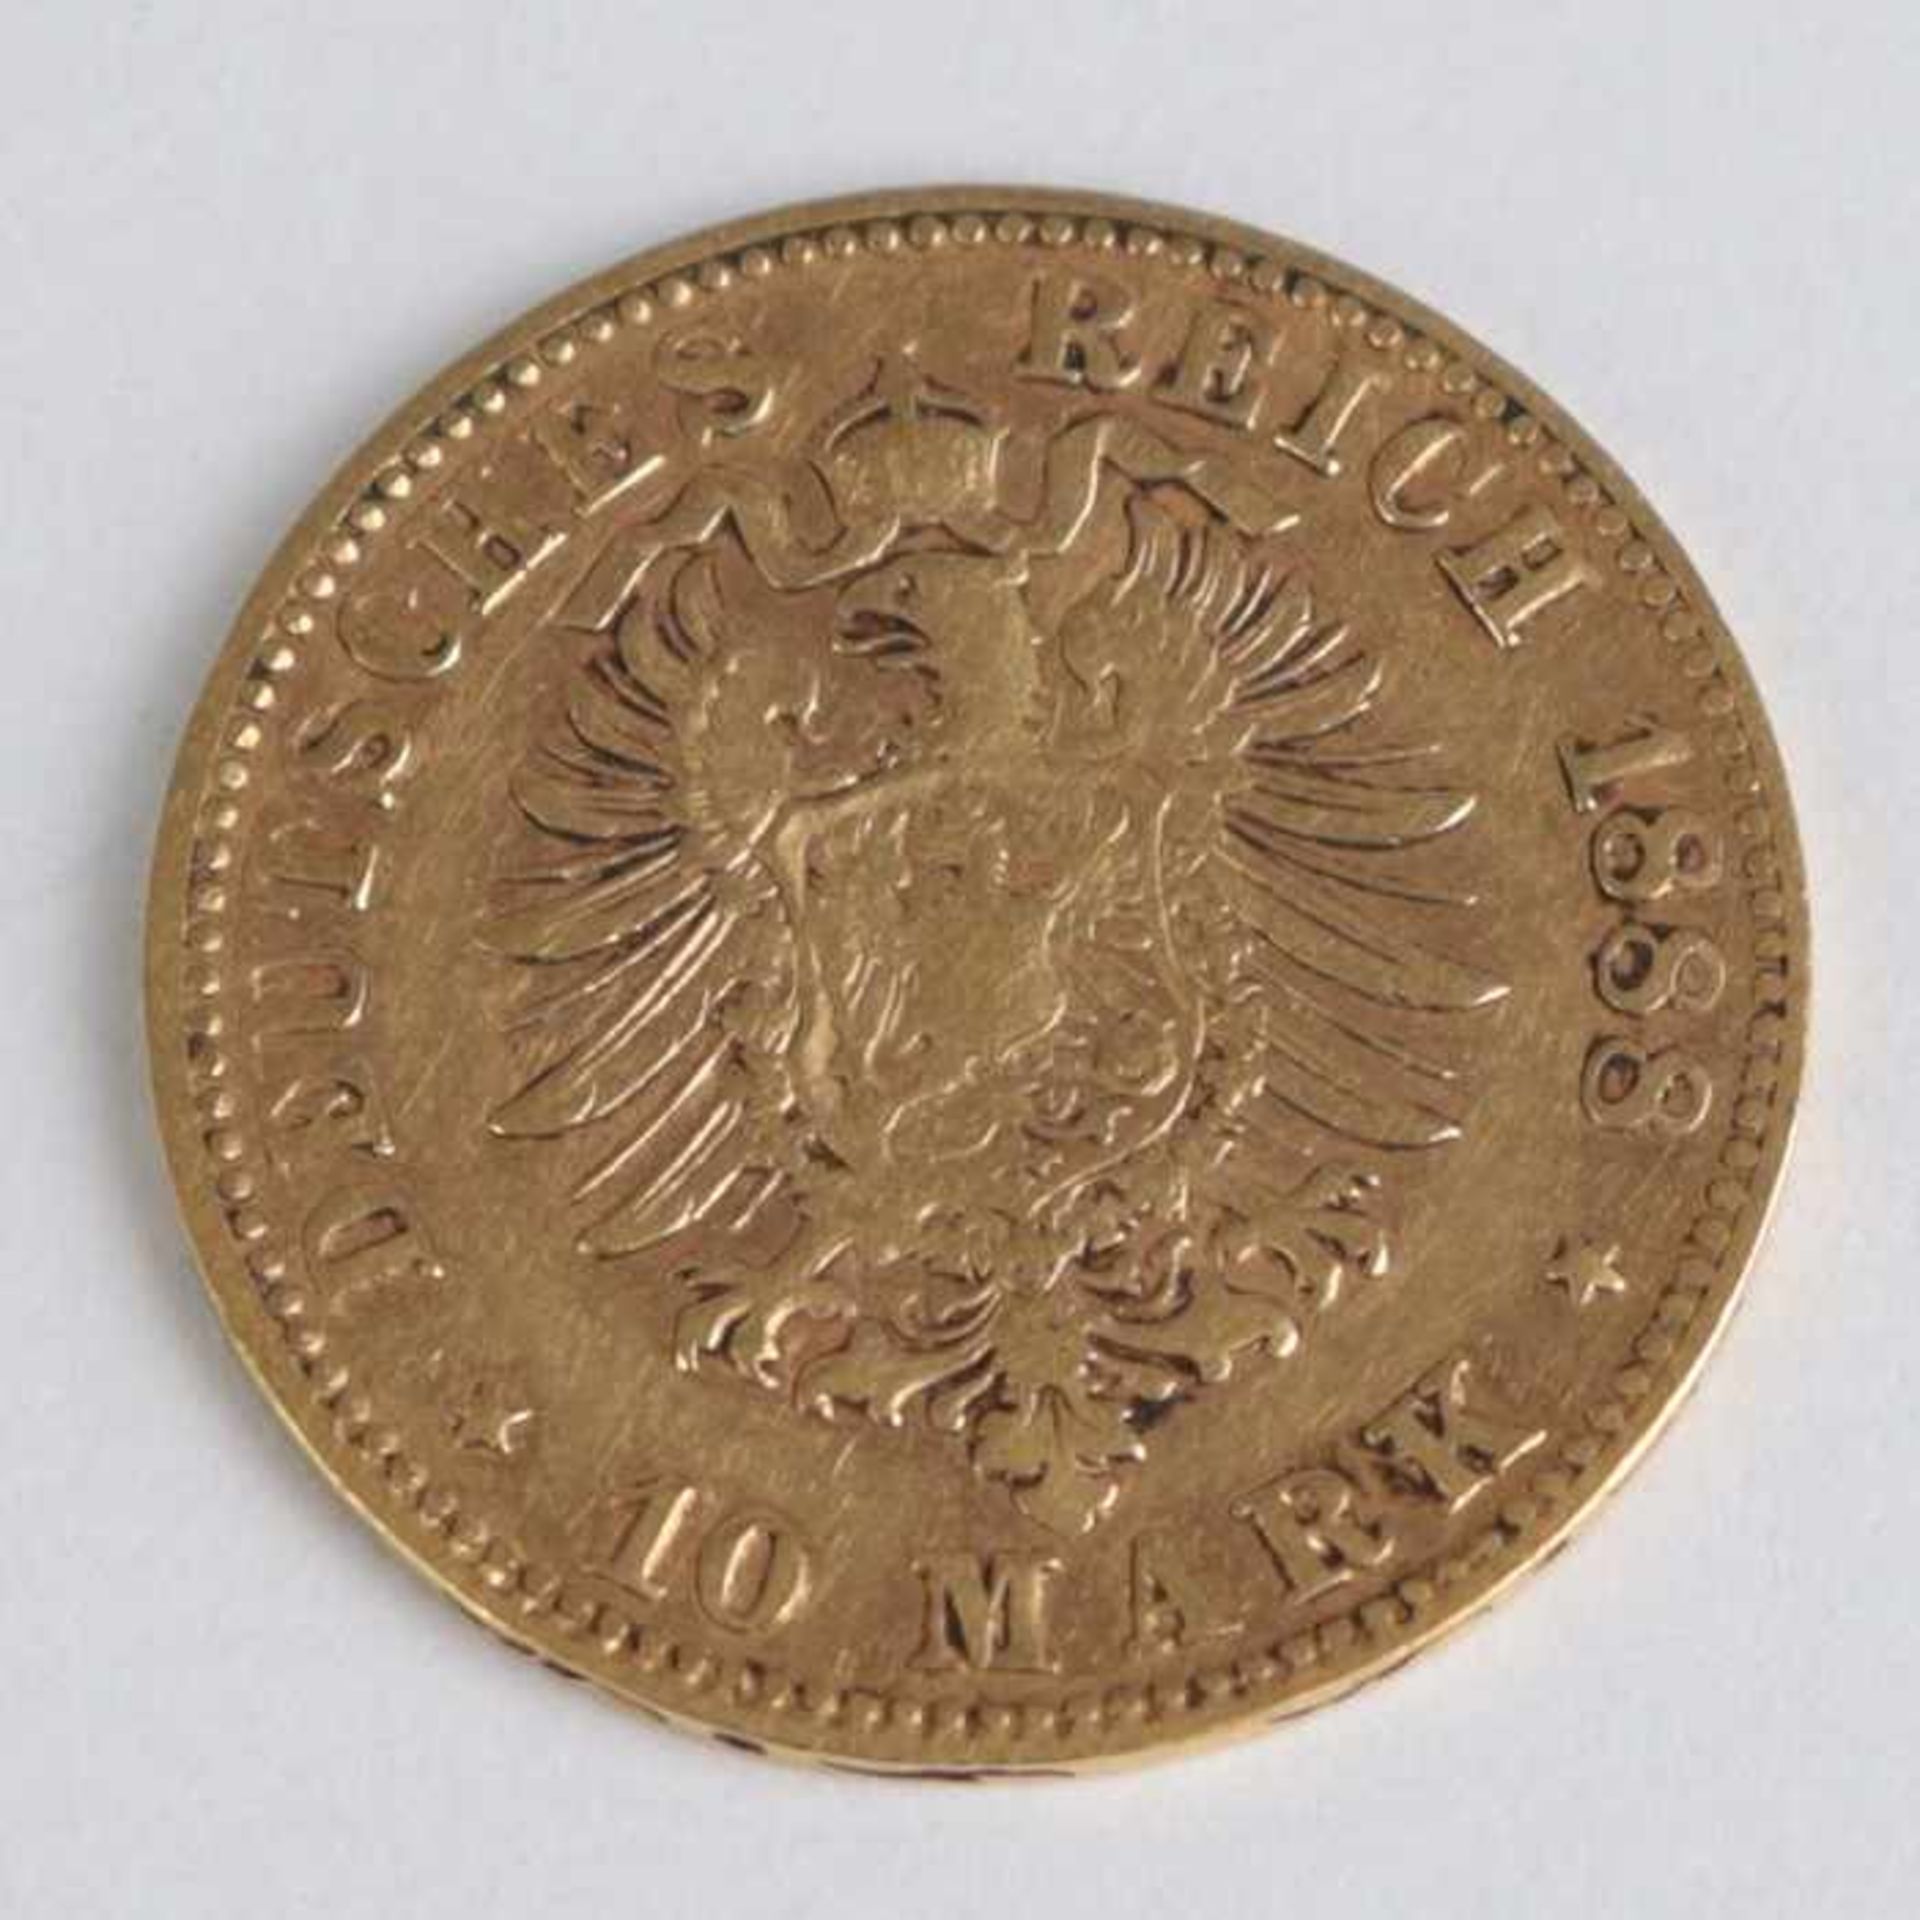 Goldmünze Württemberg - 10 MarkKarl Koenig von Wuerttemberg, Deutsches Reich, 1888/F, G 3,94g- - - - Bild 2 aus 2